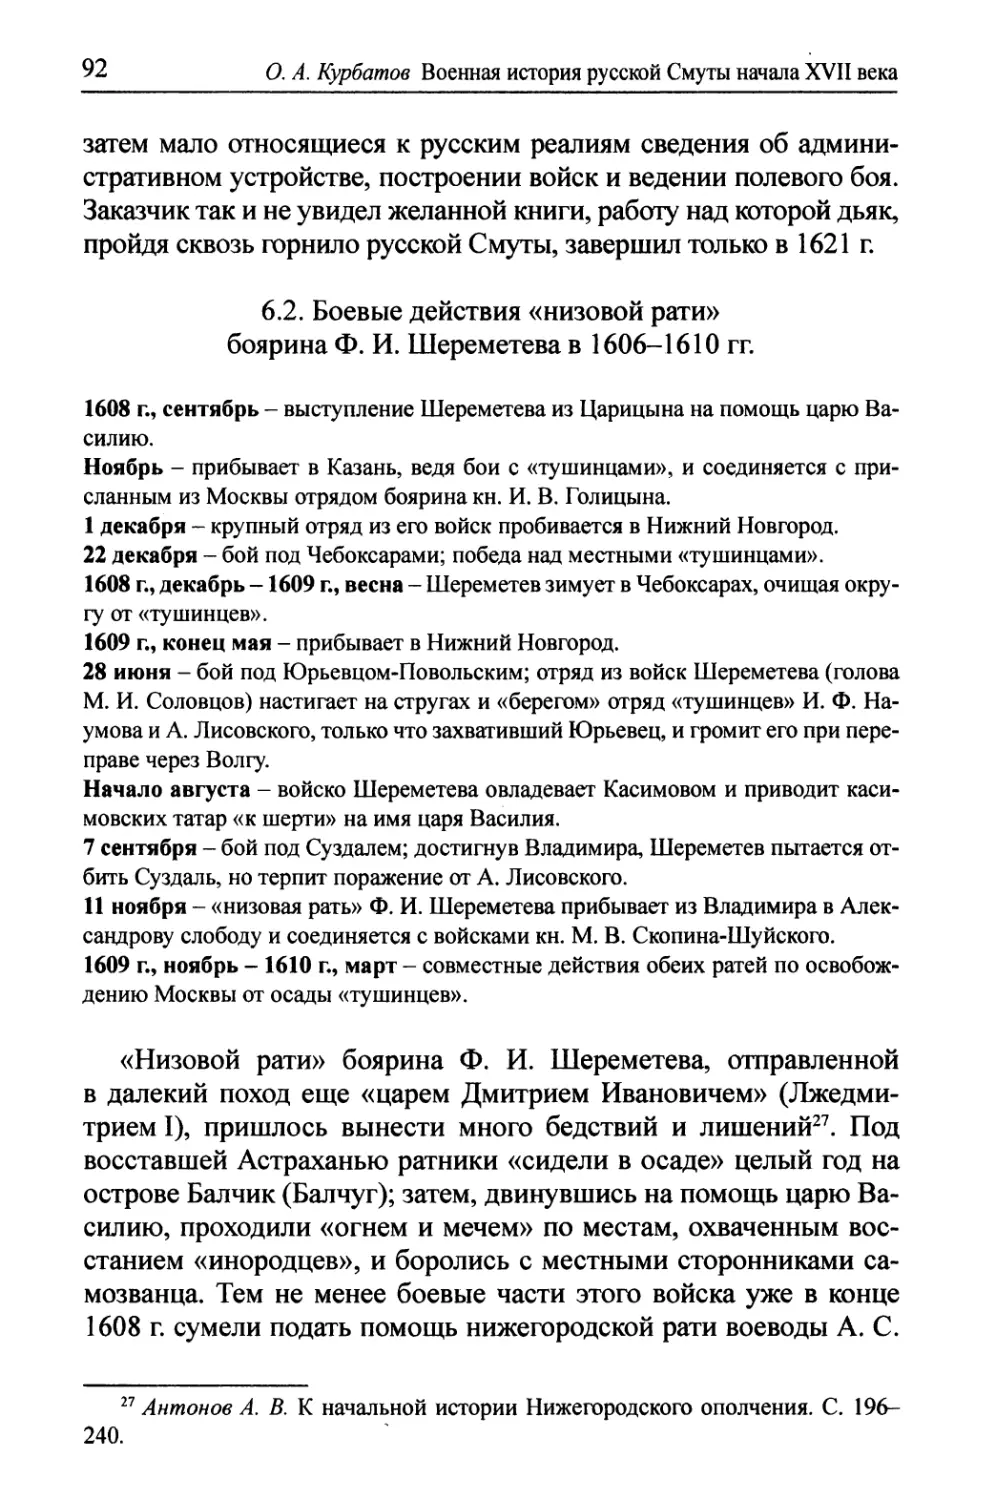 6.2.Боевые действия «низовой рати» боярина Ф.И. Шереметева в 1606-1610 гг